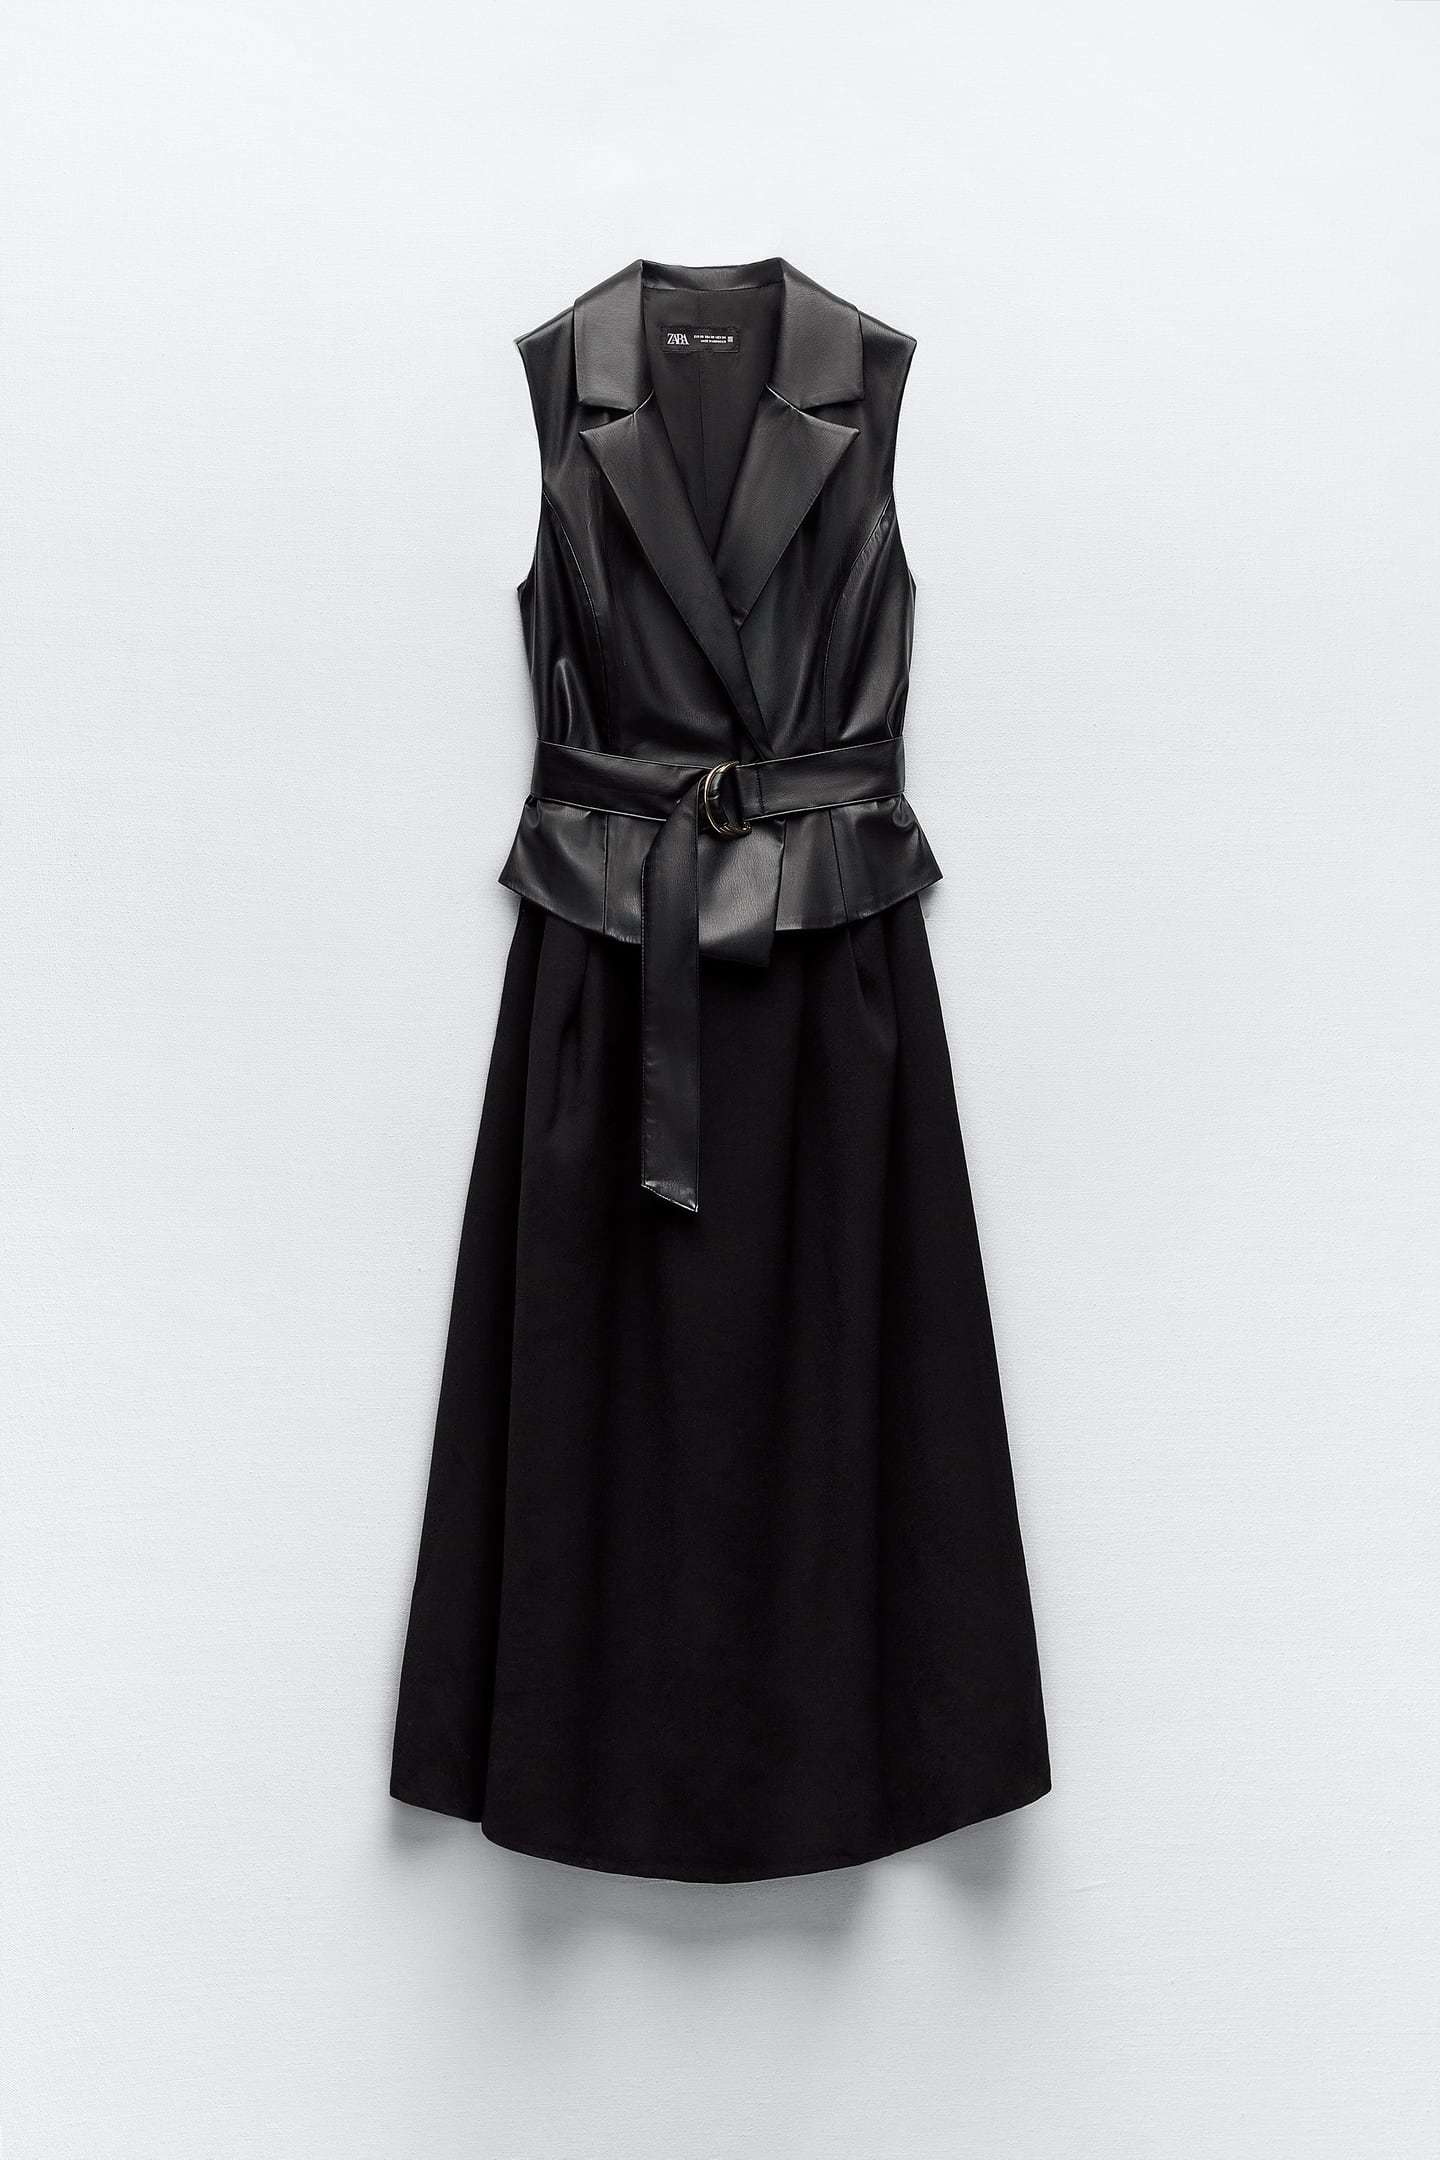 Estos son los vestidos de Zara de nueva temporada: midi combinado con efecto piel